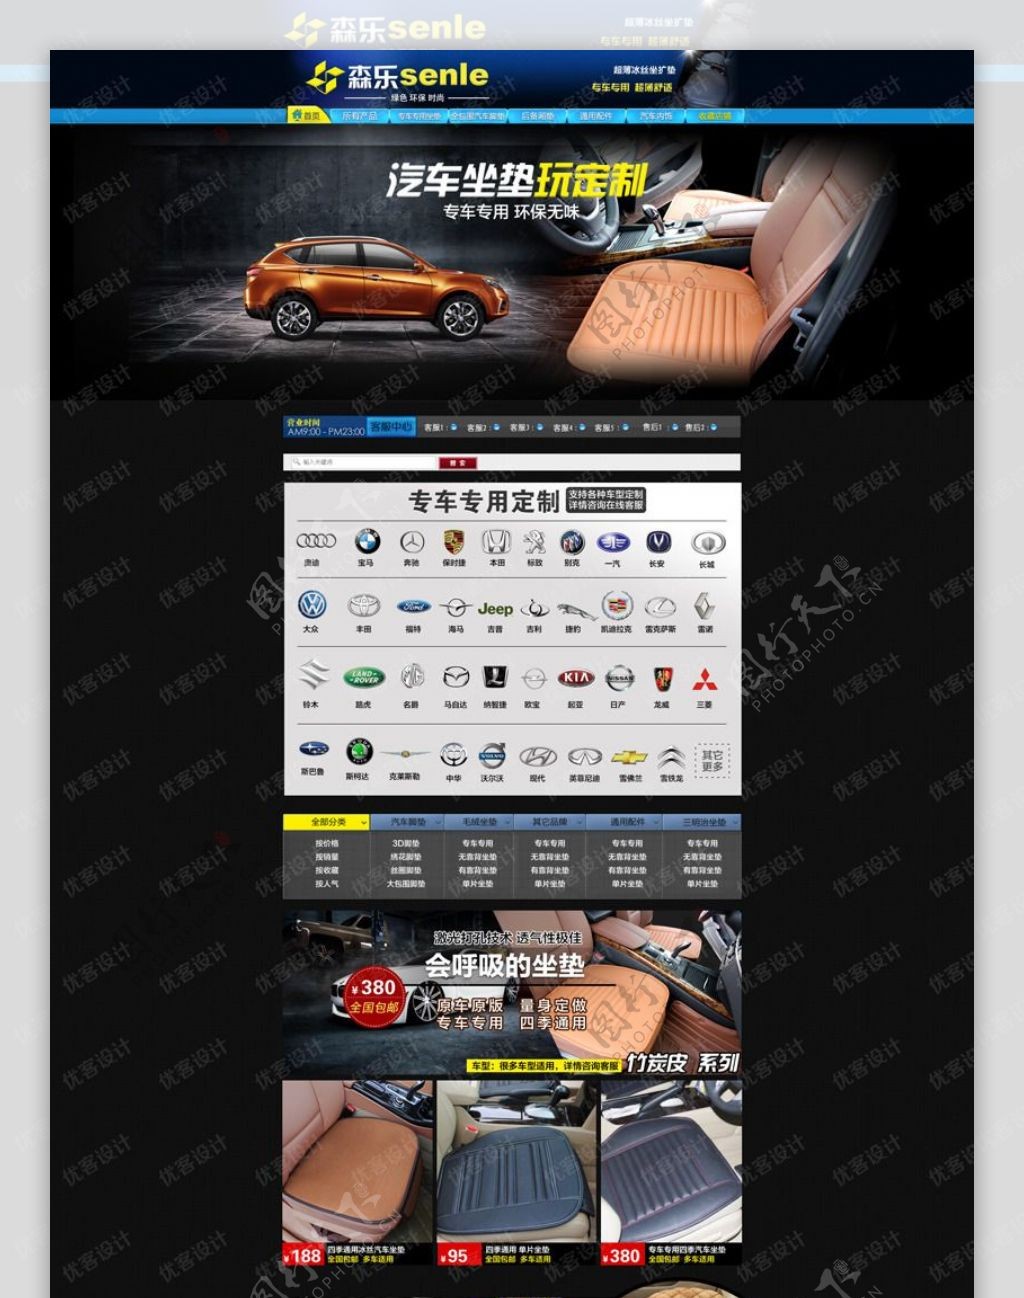 淘宝汽车坐垫促销页面设计PSD素材